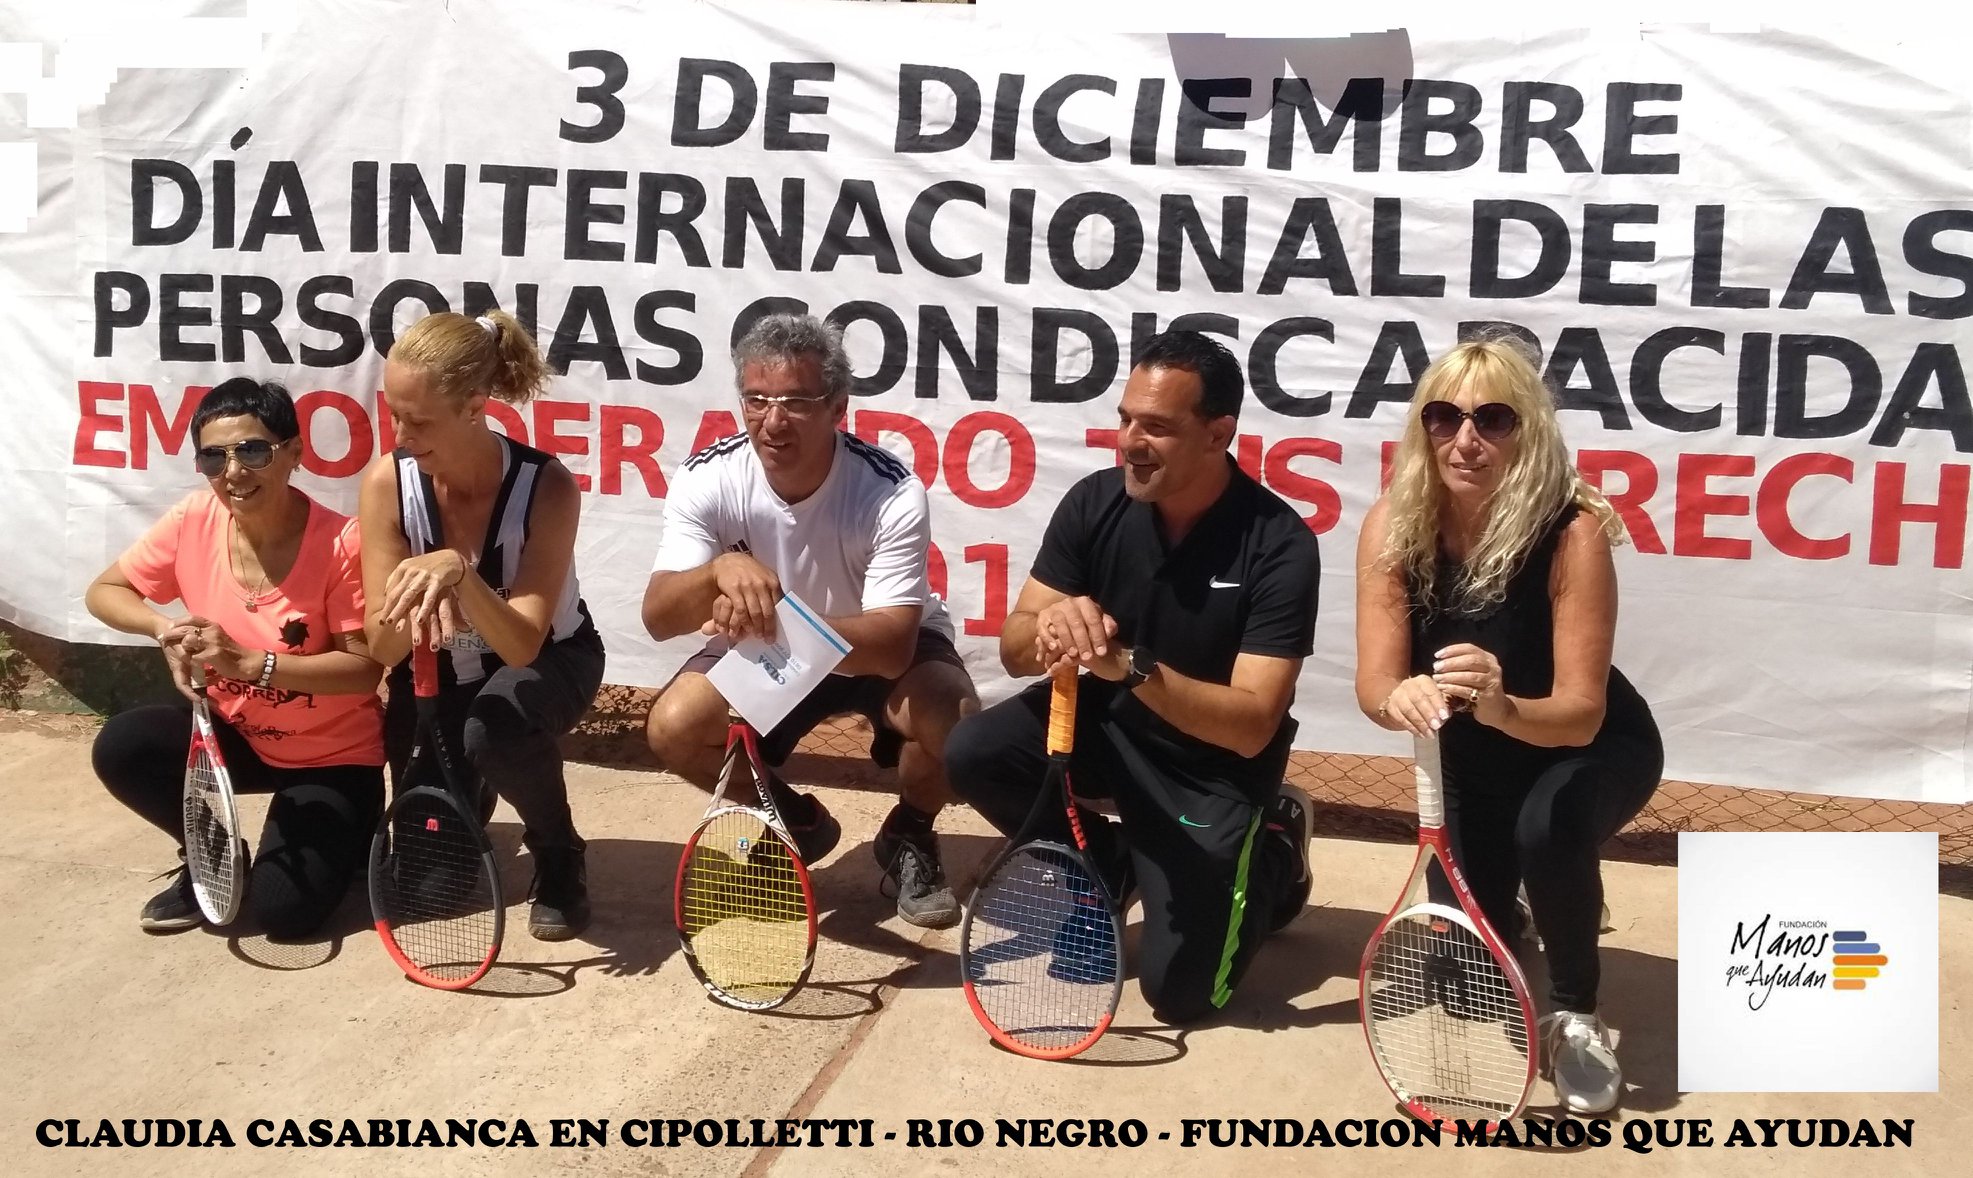 Fotografías de personas en cuclillas sosteniendo una raqueta de tenis, con un banner al fondo que celebra el 'Día Internacional de las personas con discapacidad' el 3 de diciembre.